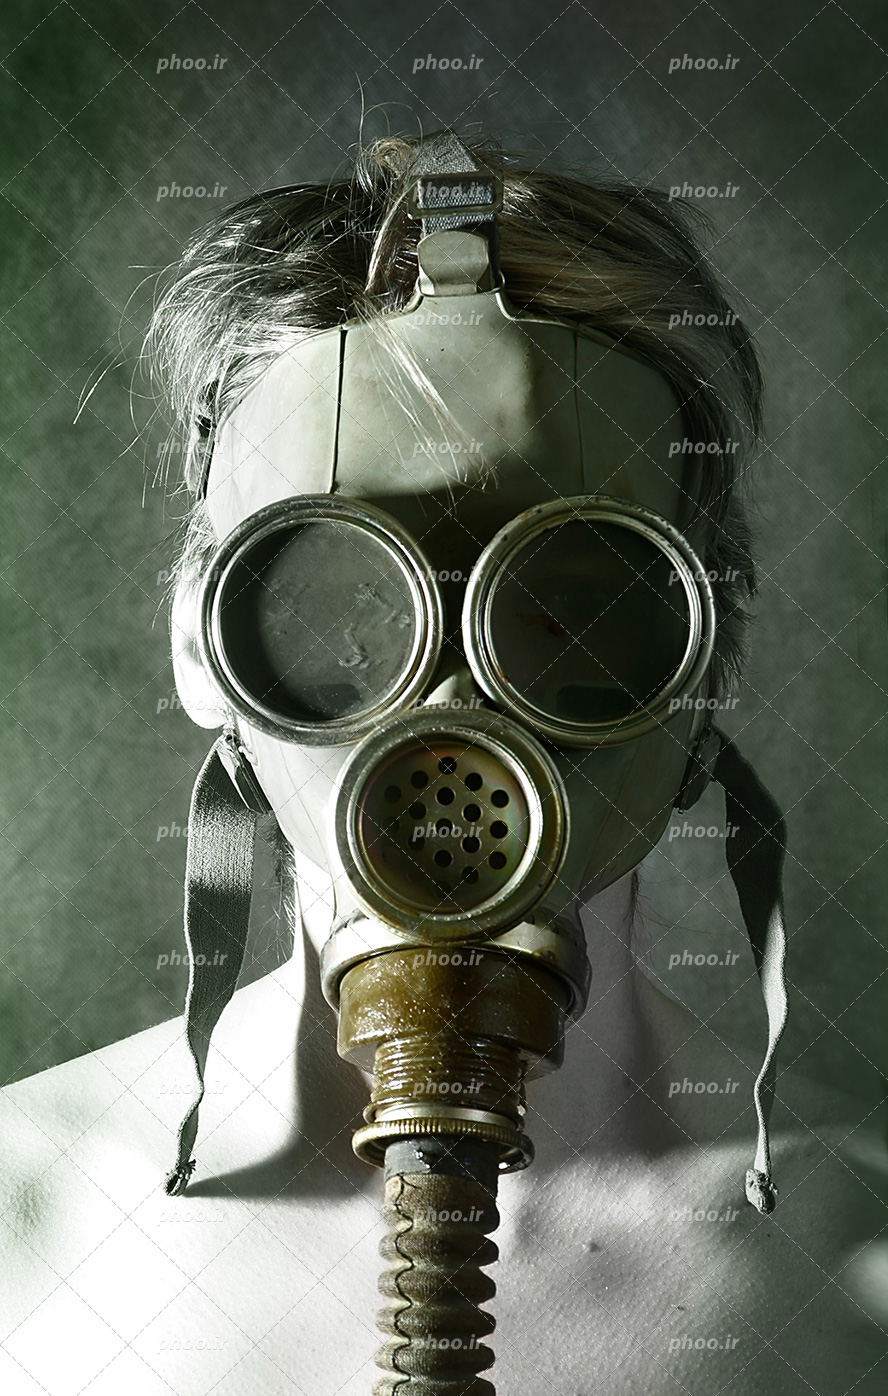 عکس با کیفیت ماسک ضد شیمیایی بر روی صورت مرد از نمای نزدیک